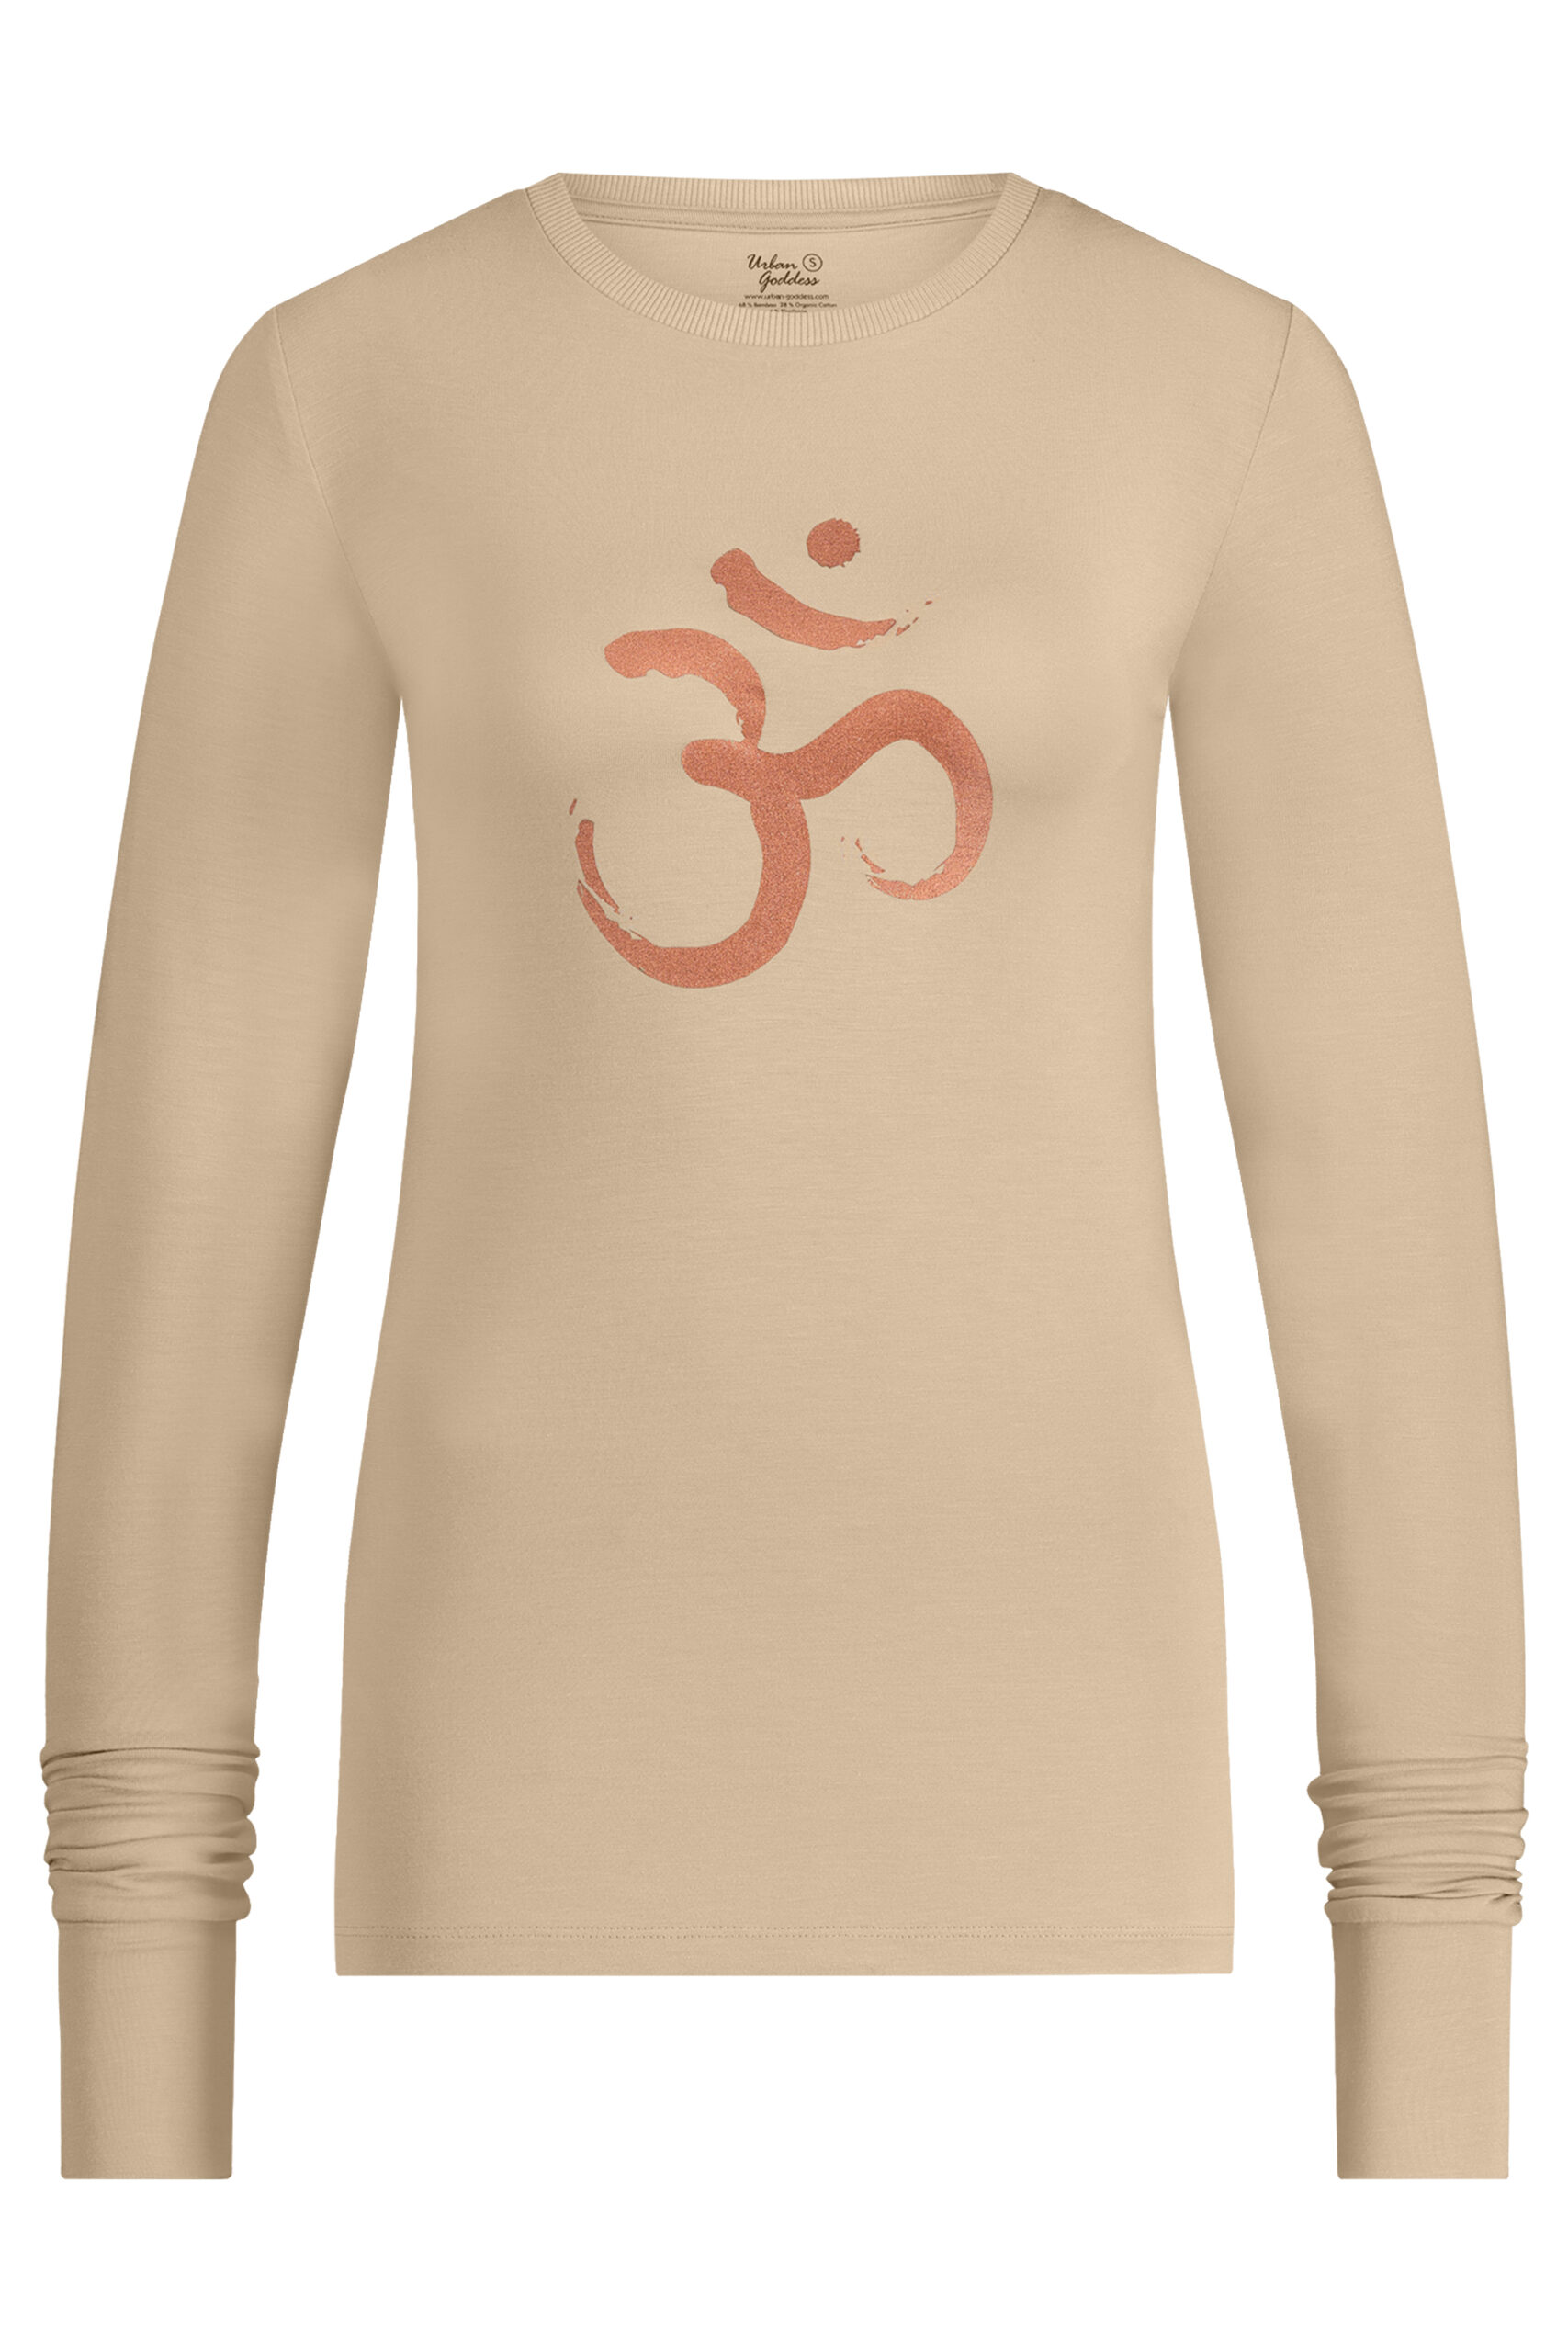 Natürliche Frauen Langarm Shirt Bio Kleidung Yoga Shirt